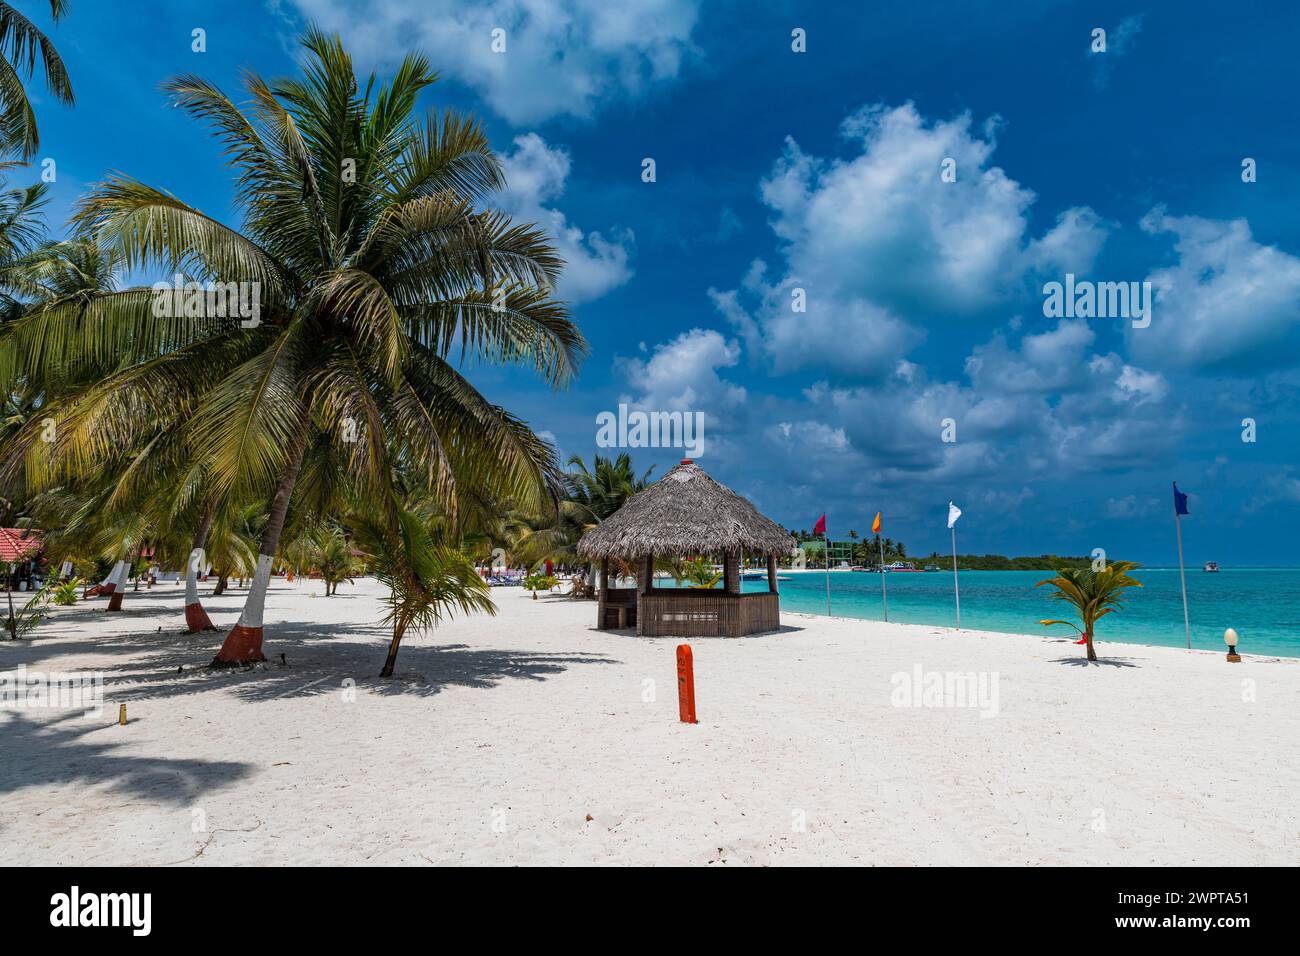 White sand beach on Bangaram island, Lakshadweep archipelago, Union territory of India Stock Photo